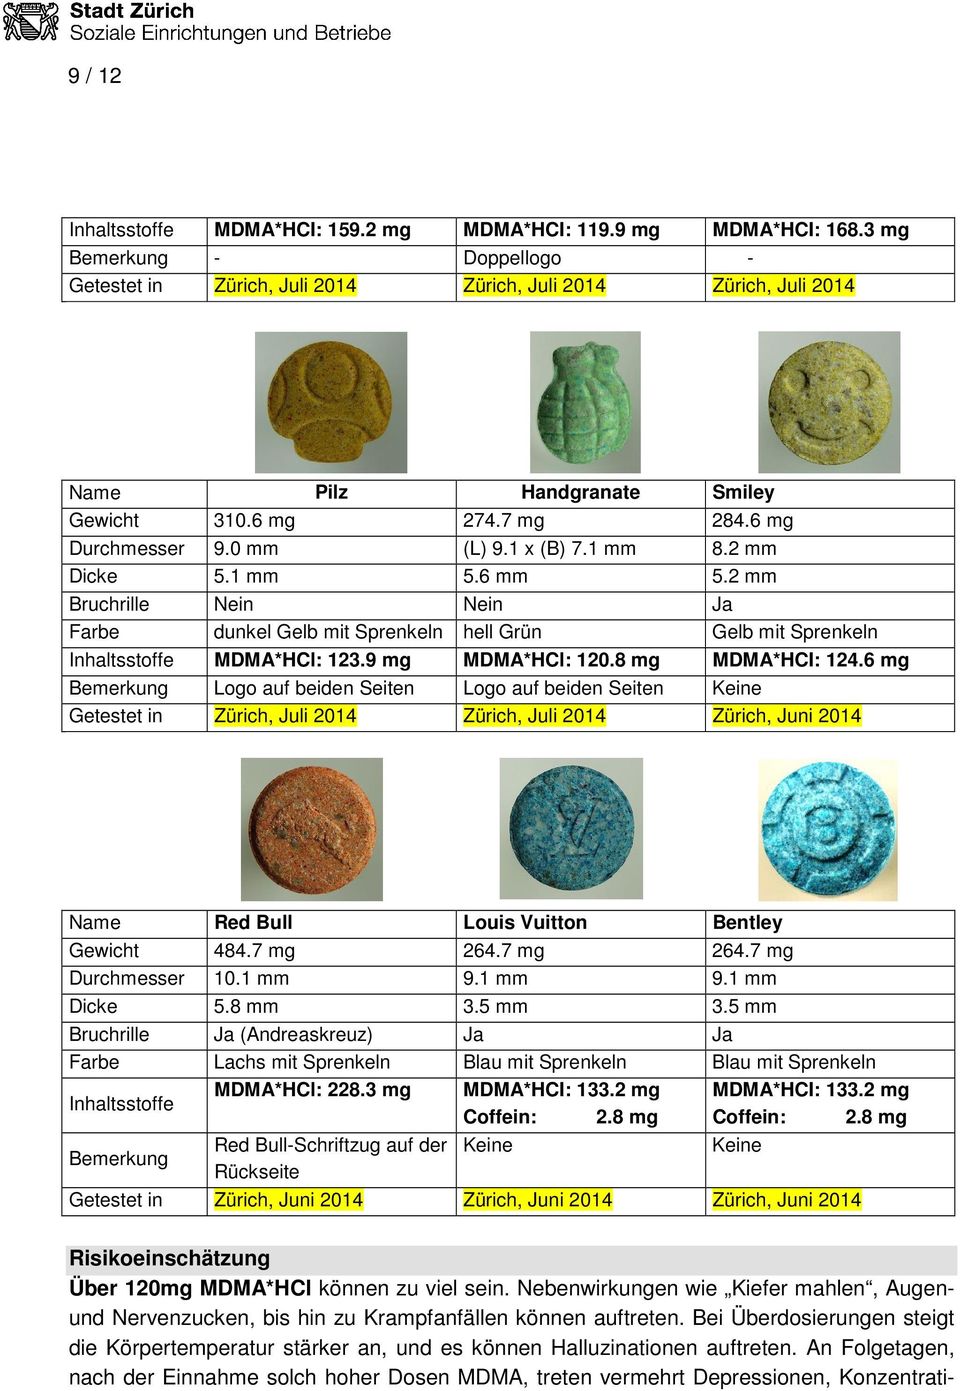 1 mm 8.2 mm Dicke 5.1 mm 5.6 mm 5.2 mm Bruchrille Nein Nein Ja Farbe dunkel Gelb mit Sprenkeln hell Grün Gelb mit Sprenkeln Inhaltsstoffe MDMA*HCl: 123.9 mg MDMA*HCl: 120.8 mg MDMA*HCI: 124.